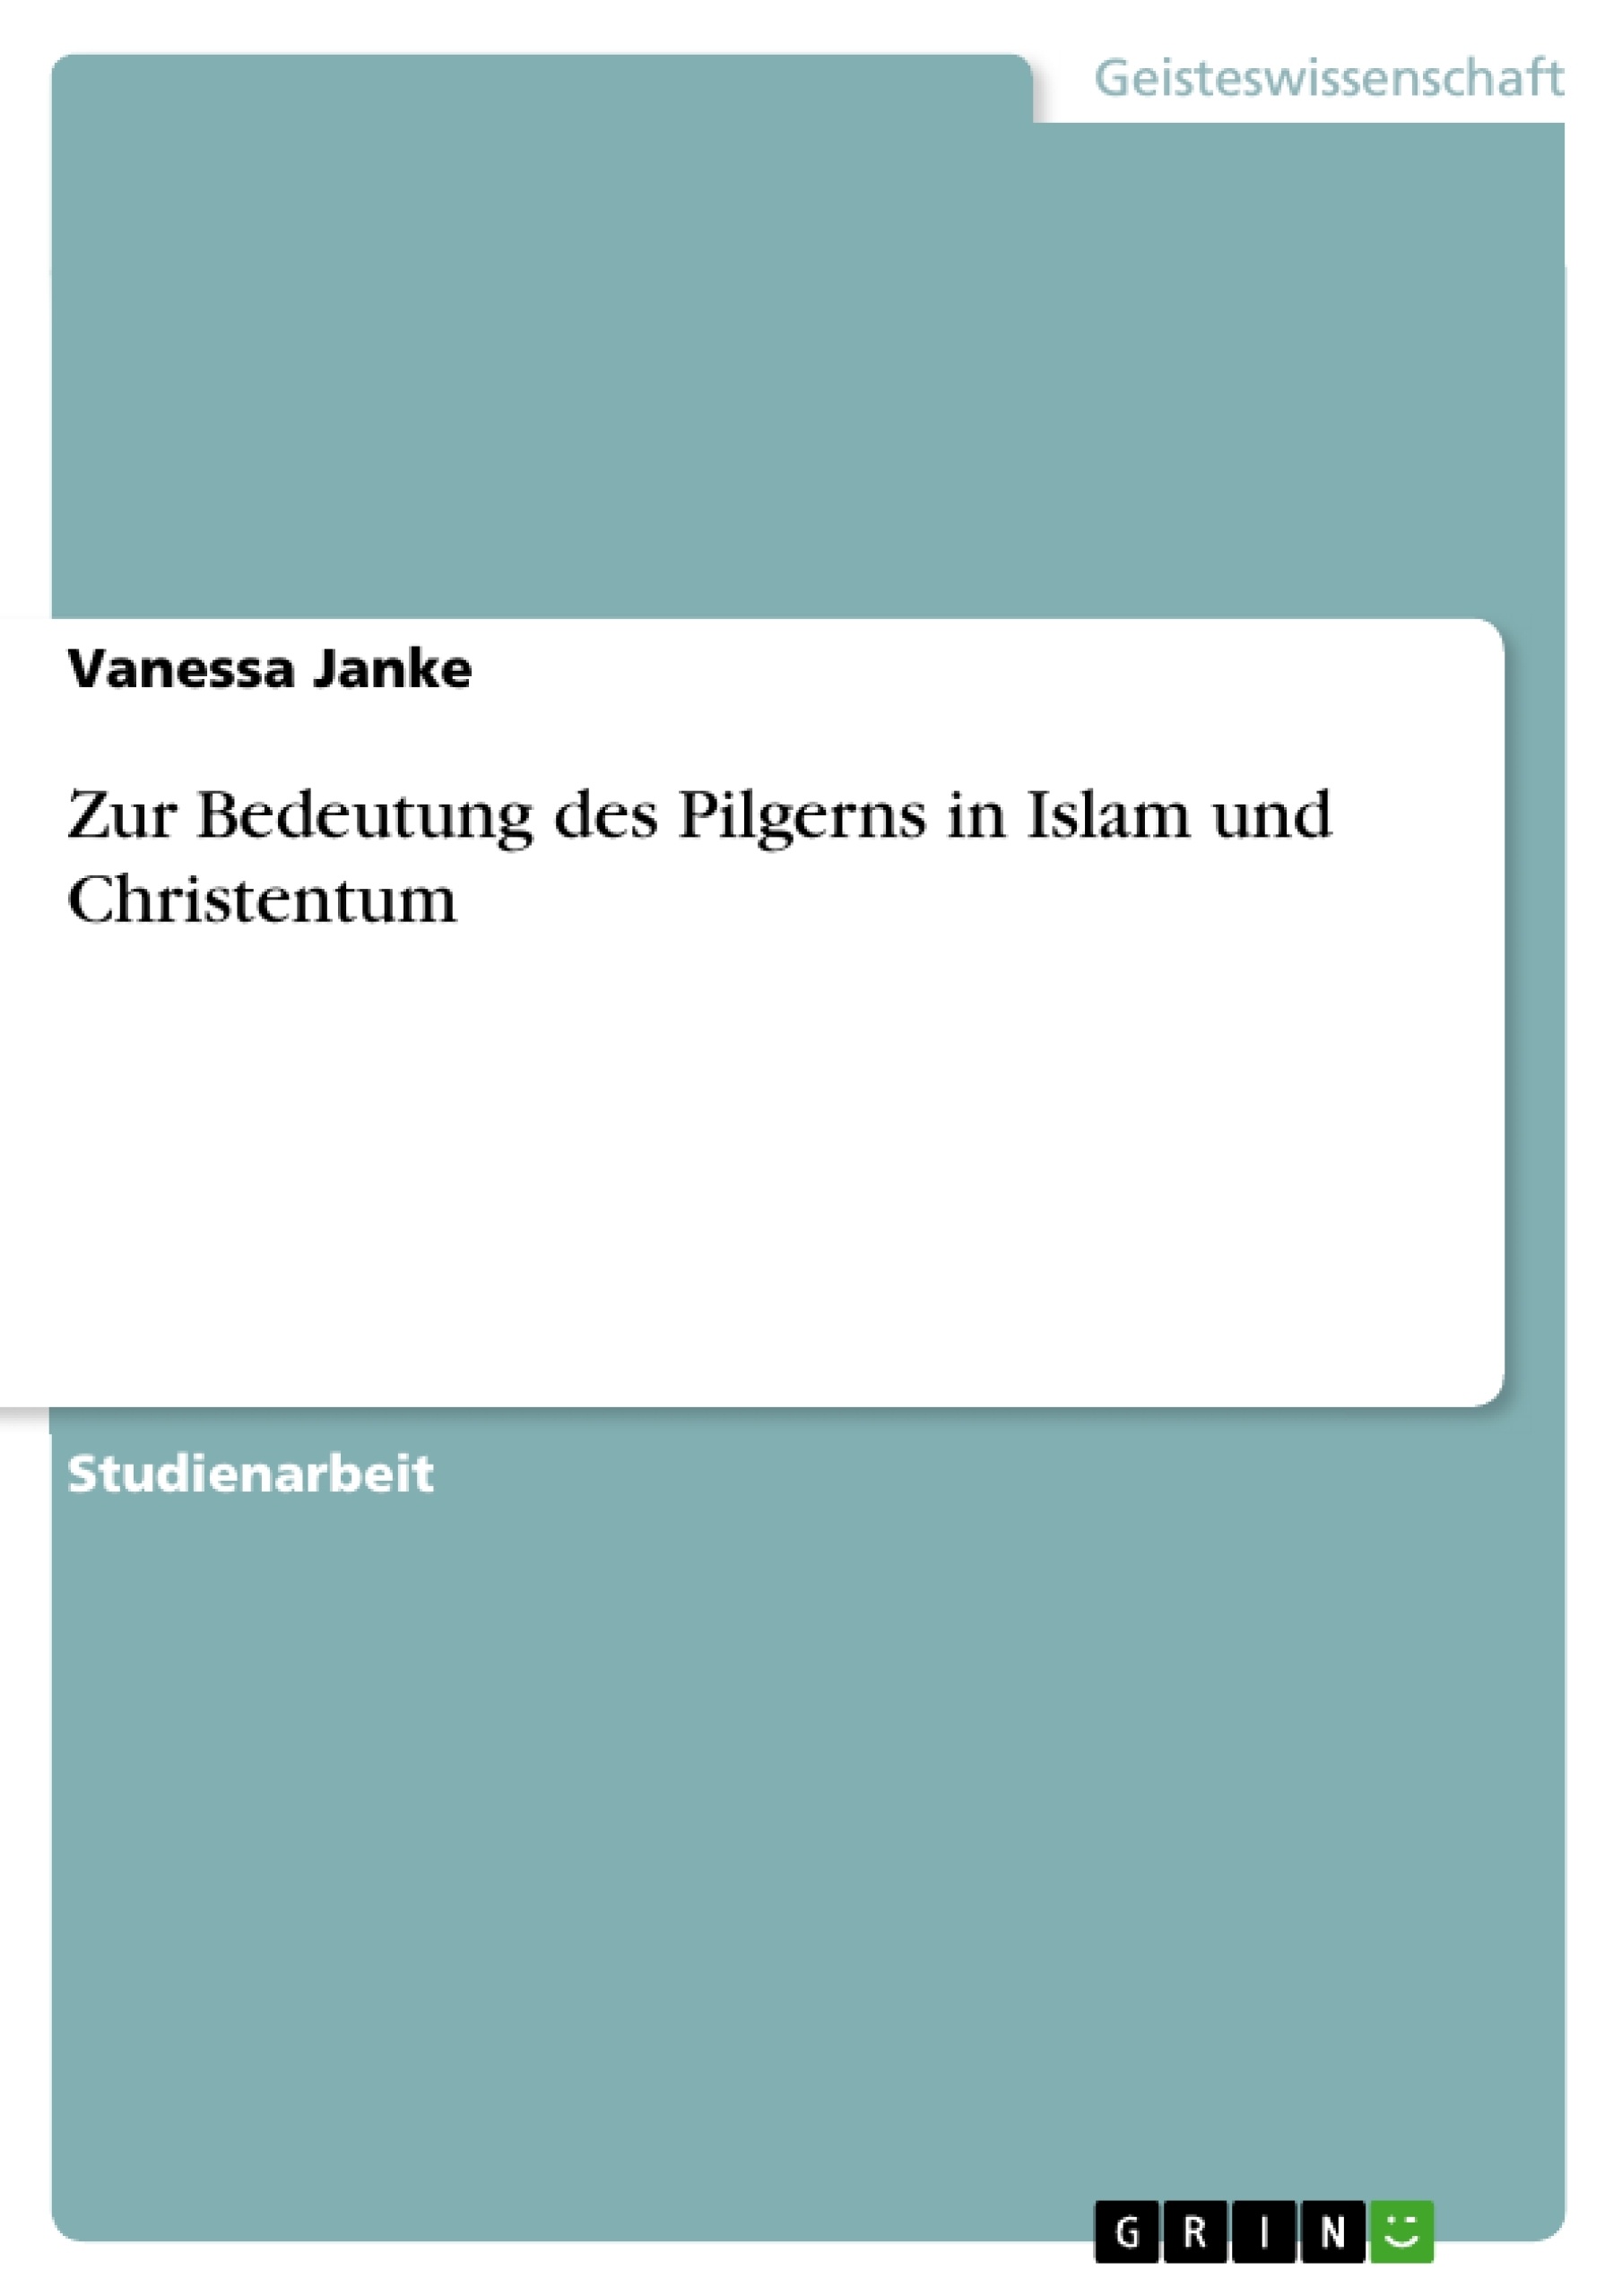 Title: Zur Bedeutung des Pilgerns in Islam und Christentum